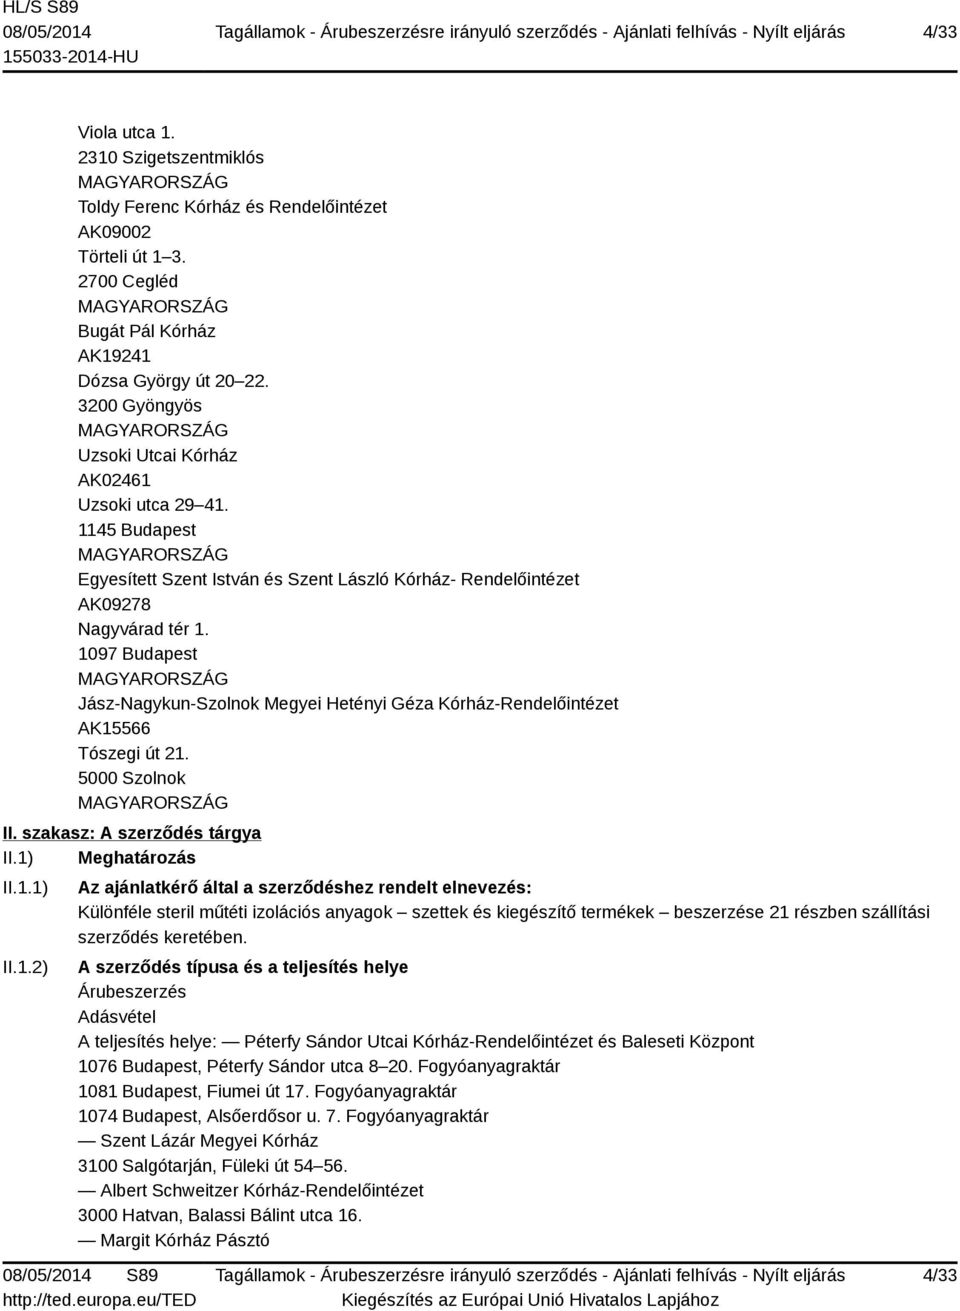 1097 Budapest Jász-Nagykun-Szolnok Megyei Hetényi Géza Kórház-Rendelőintézet AK15566 Tószegi út 21. 5000 Szolnok II. szakasz: A szerződés tárgya II.1) Meghatározás II.1.1) II.1.2) Az ajánlatkérő által a szerződéshez rendelt elnevezés: Különféle steril műtéti izolációs anyagok szettek és kiegészítő termékek beszerzése 21 részben szállítási szerződés keretében.